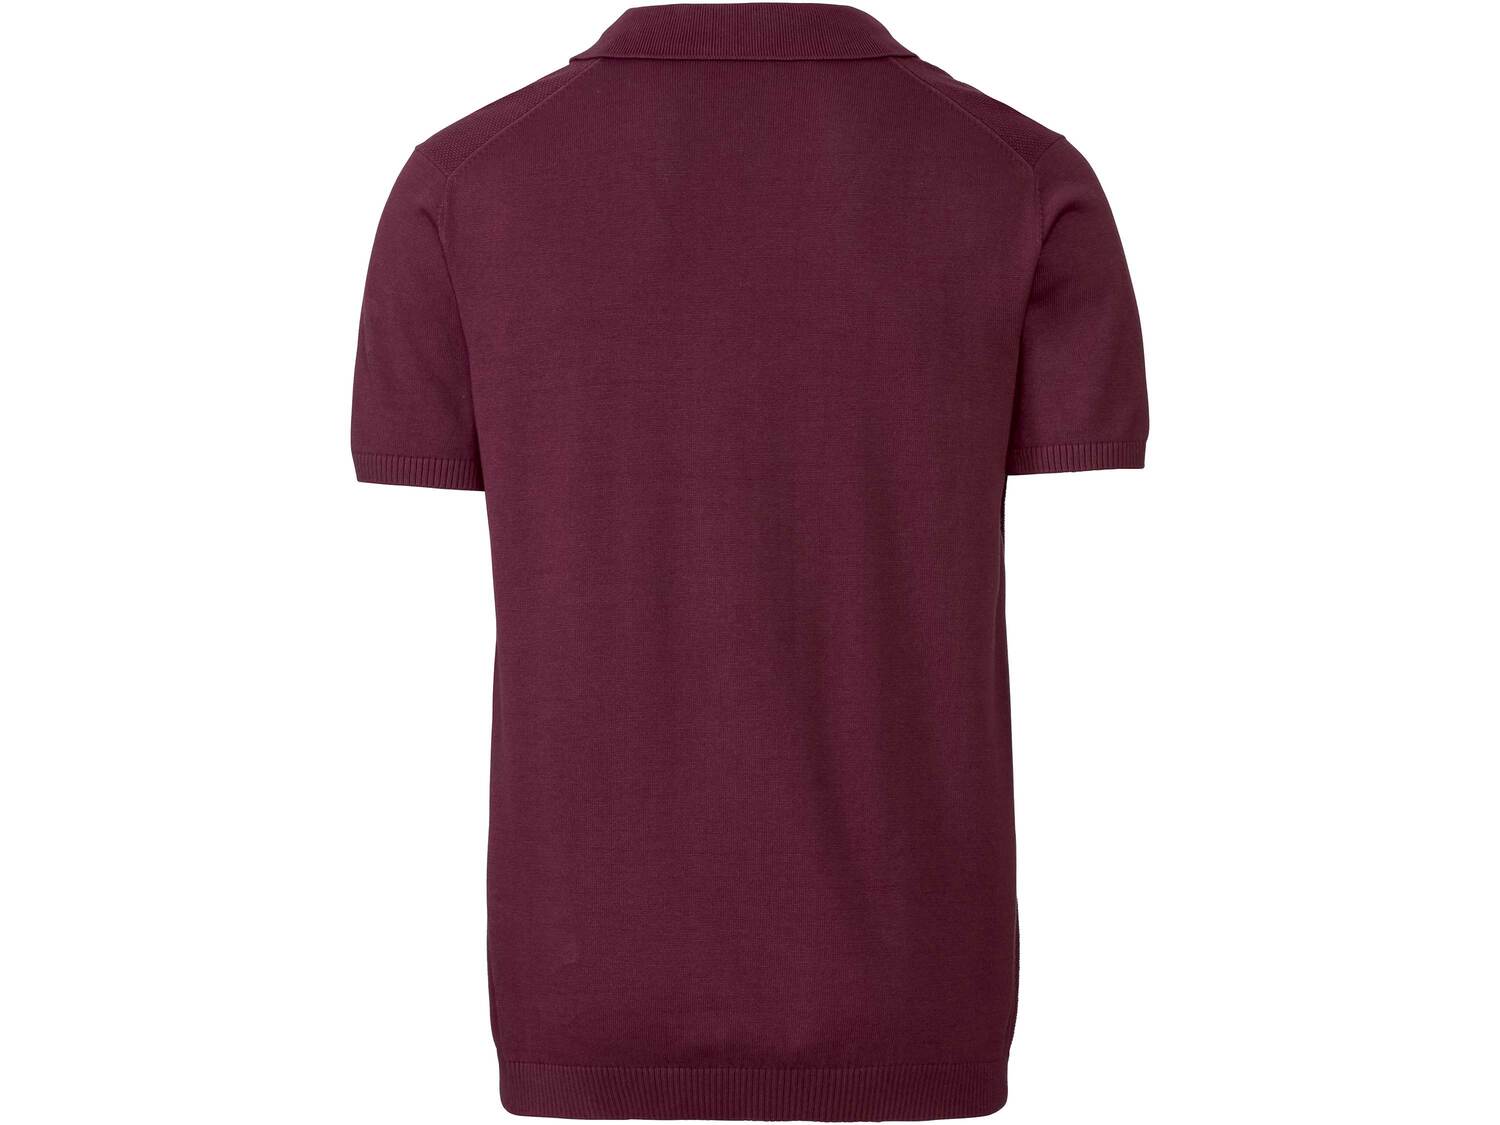 Koszulka polo Livergy, cena 29,99 PLN 
- rozmiary: M-XL
- 100% bawełny
Dostępne ...